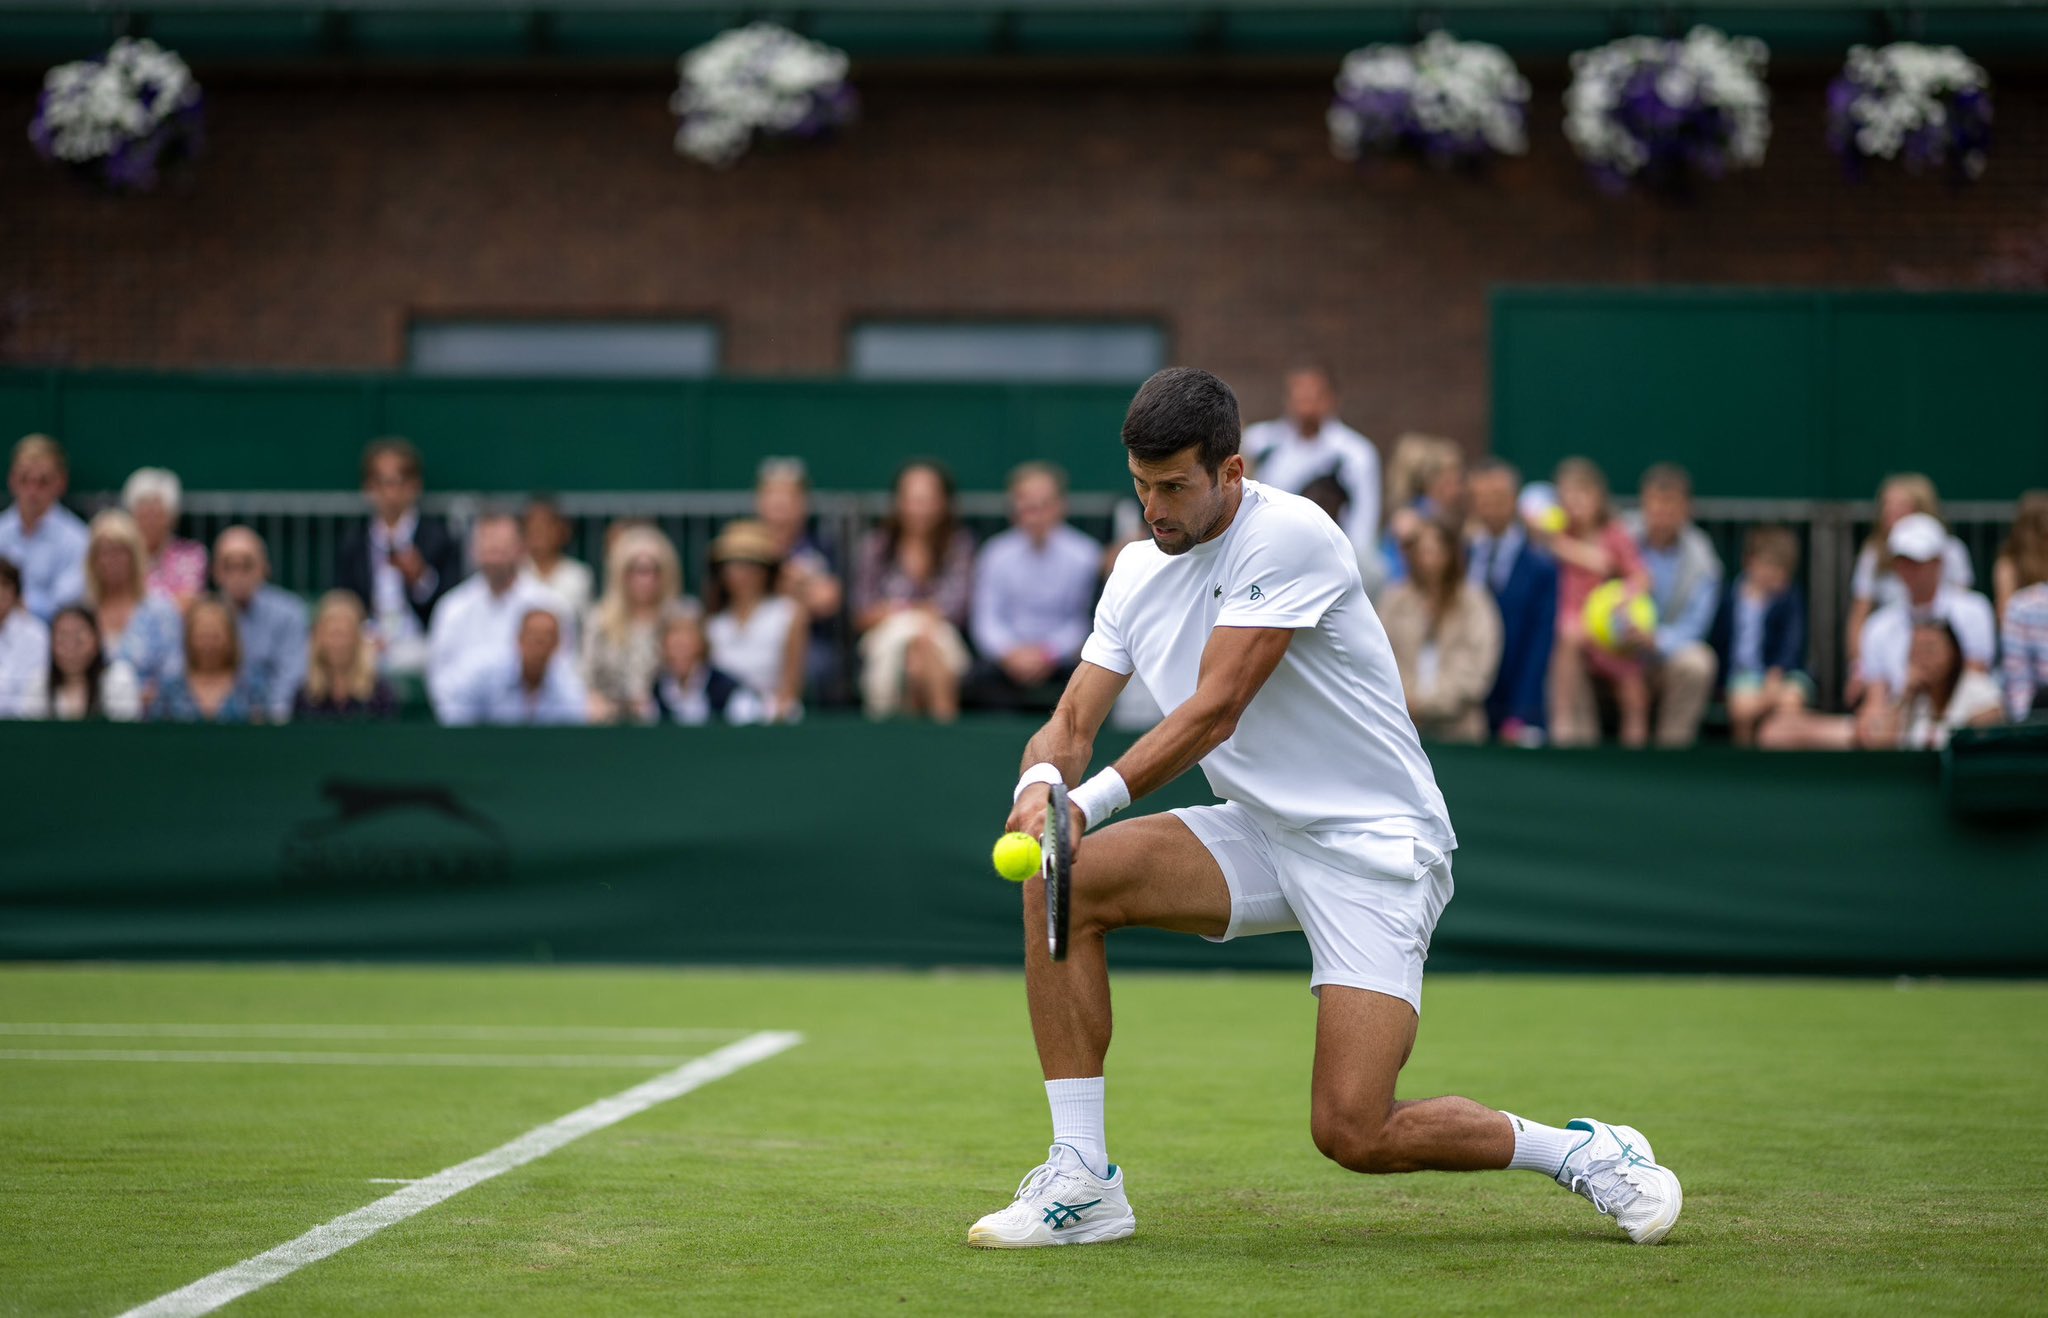 A pesar de la derrota en Wimbledon, Novak Djokovic seguirá motivado a estar más fuerte y seguirse preparando. Foto: Twitter @DjokerNole